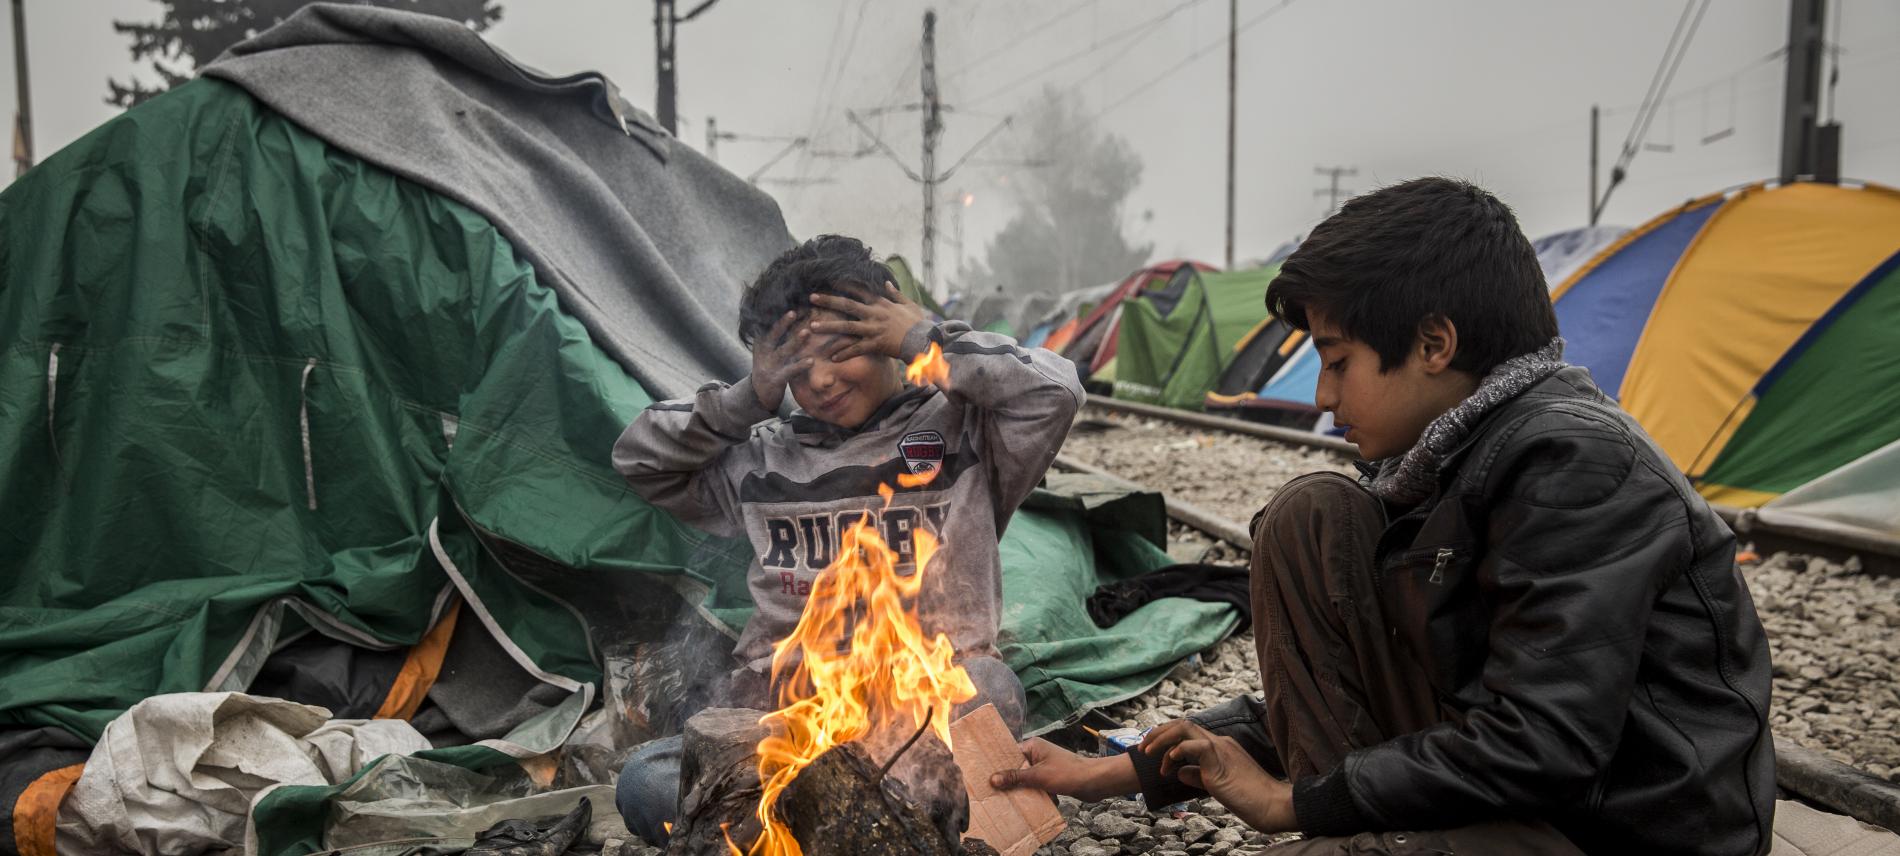 Rauch und Feuer gefährden die Gesundheit der Flüchtlinge. Foto: Olmo Calvo